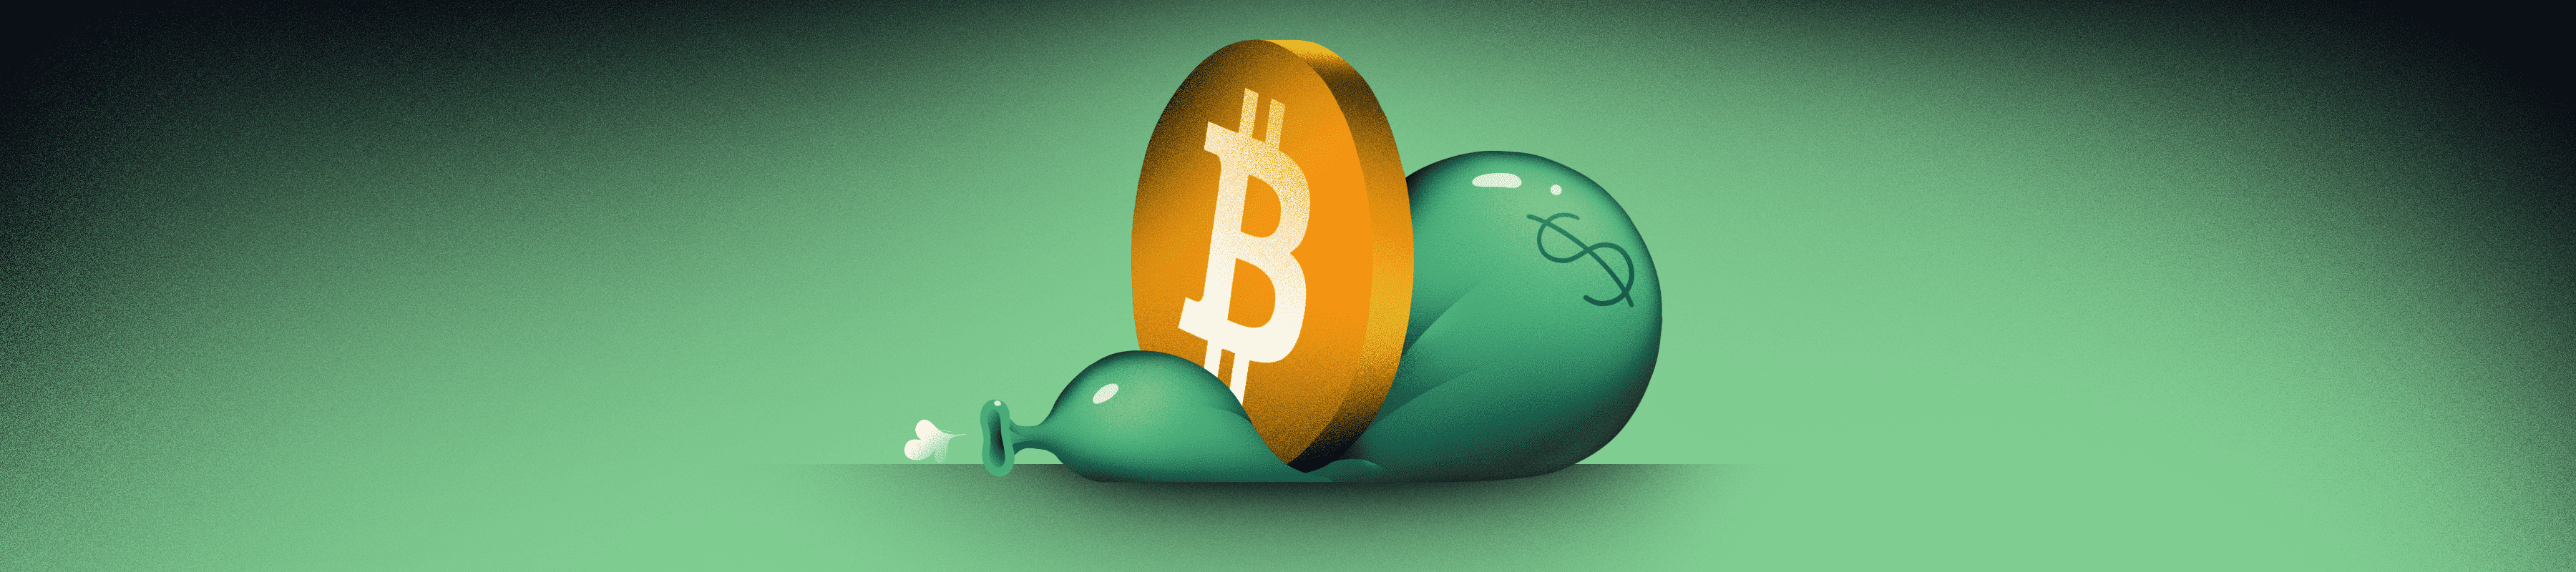 Evita la inflación con Bitcoin: criptomonedas como cobertura